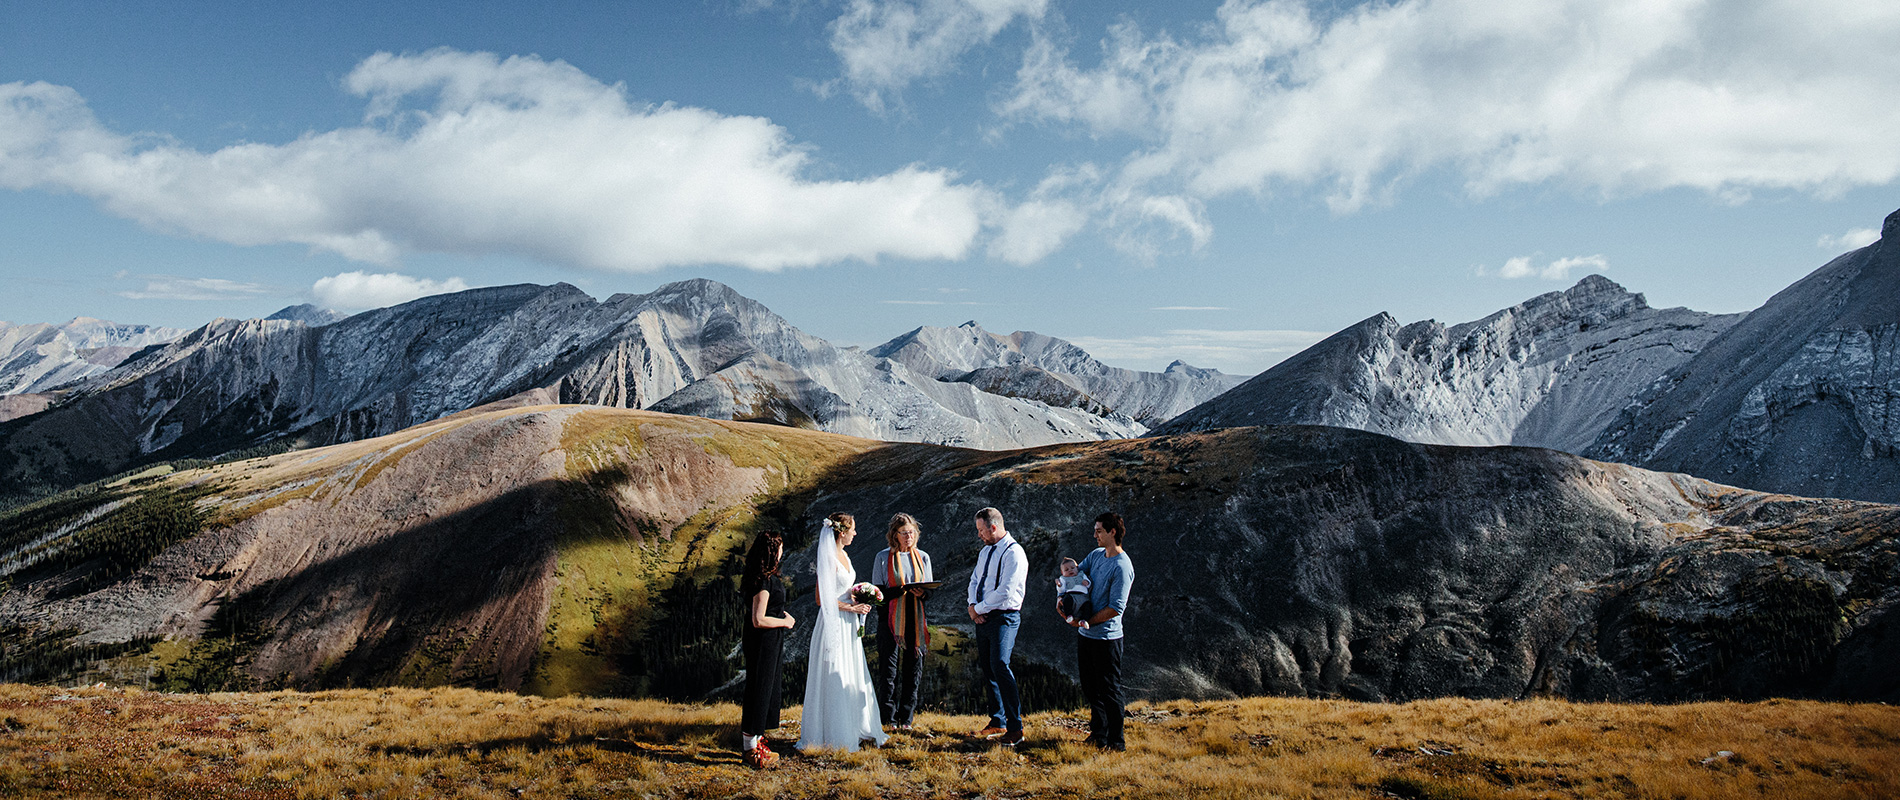 Mt Charles Stewart heli wedding - wedding mound